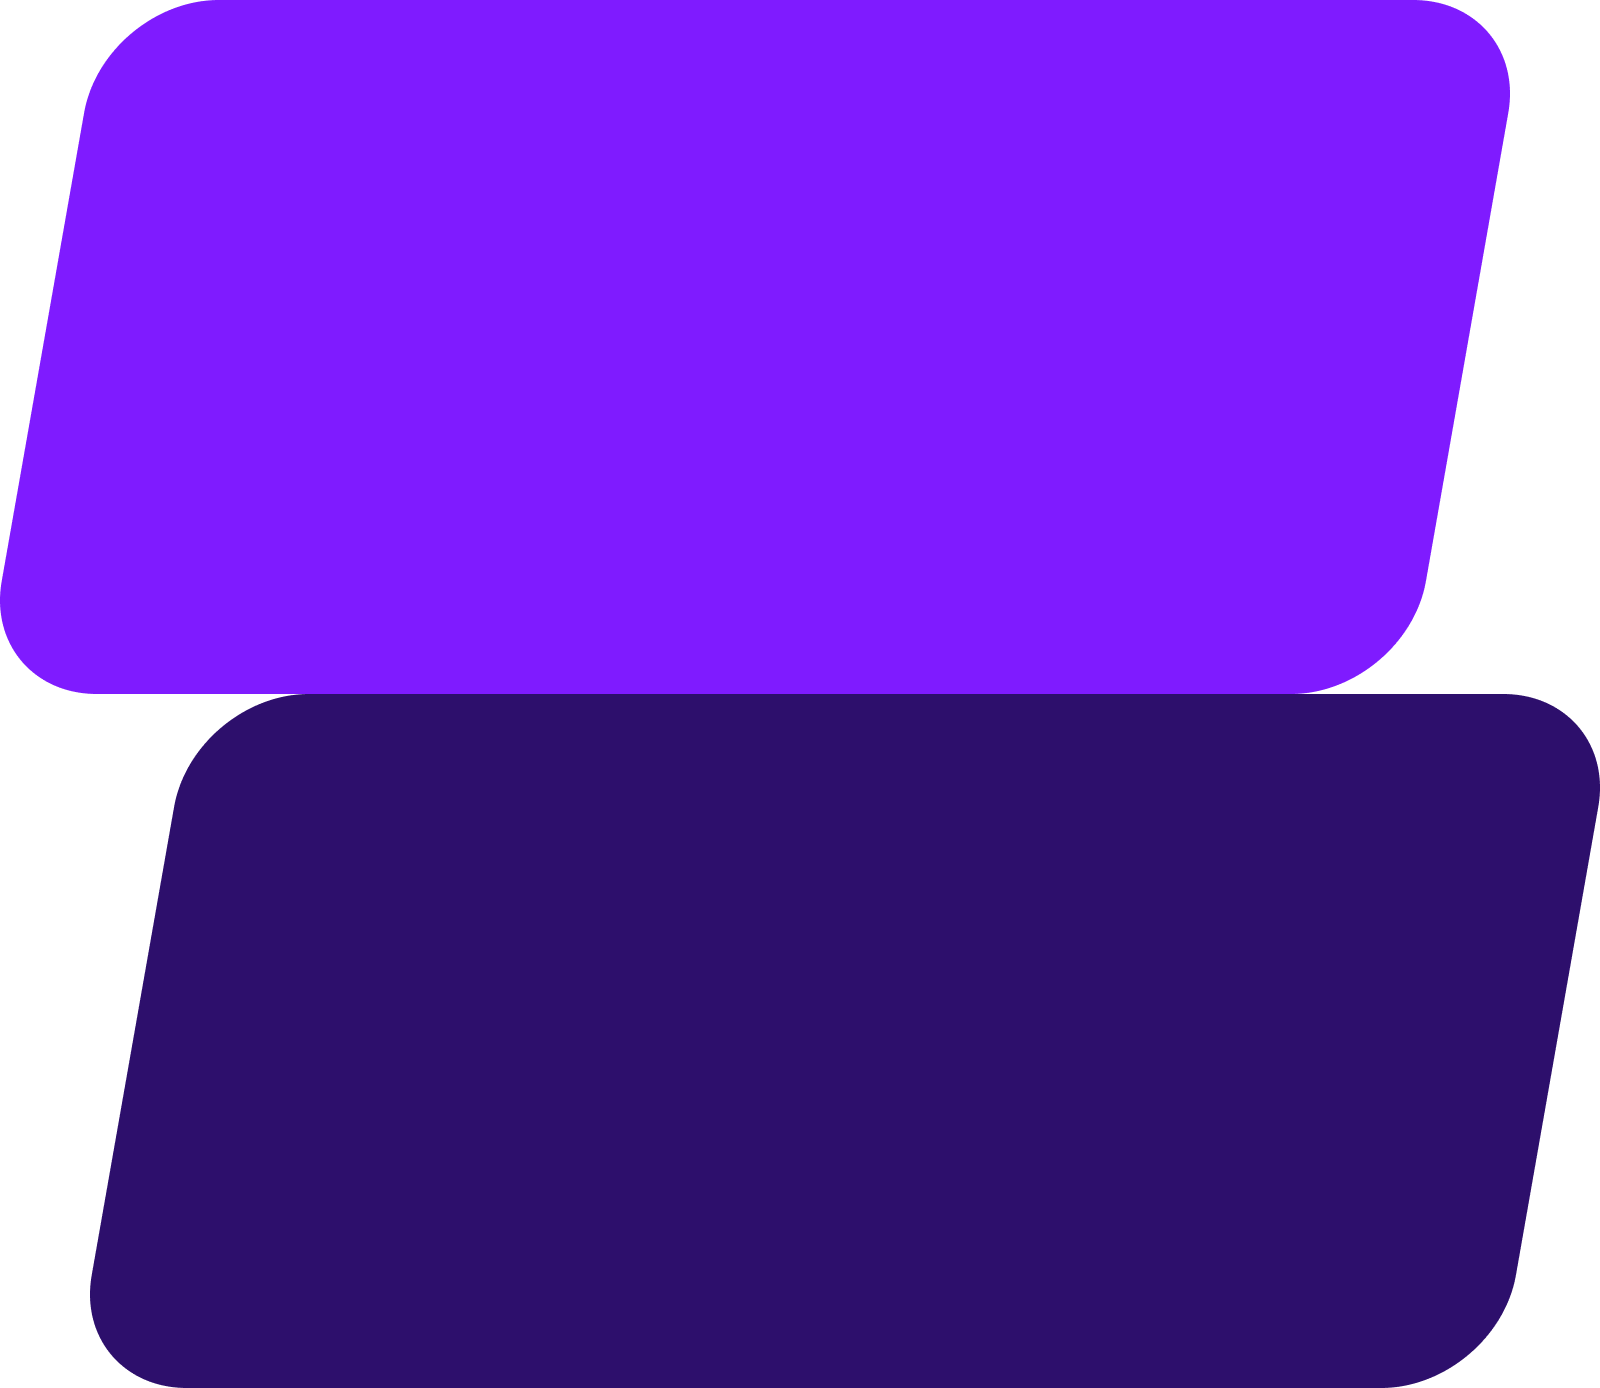 Formas gráficas abstractas de color púrpura sobre fondo transparente.